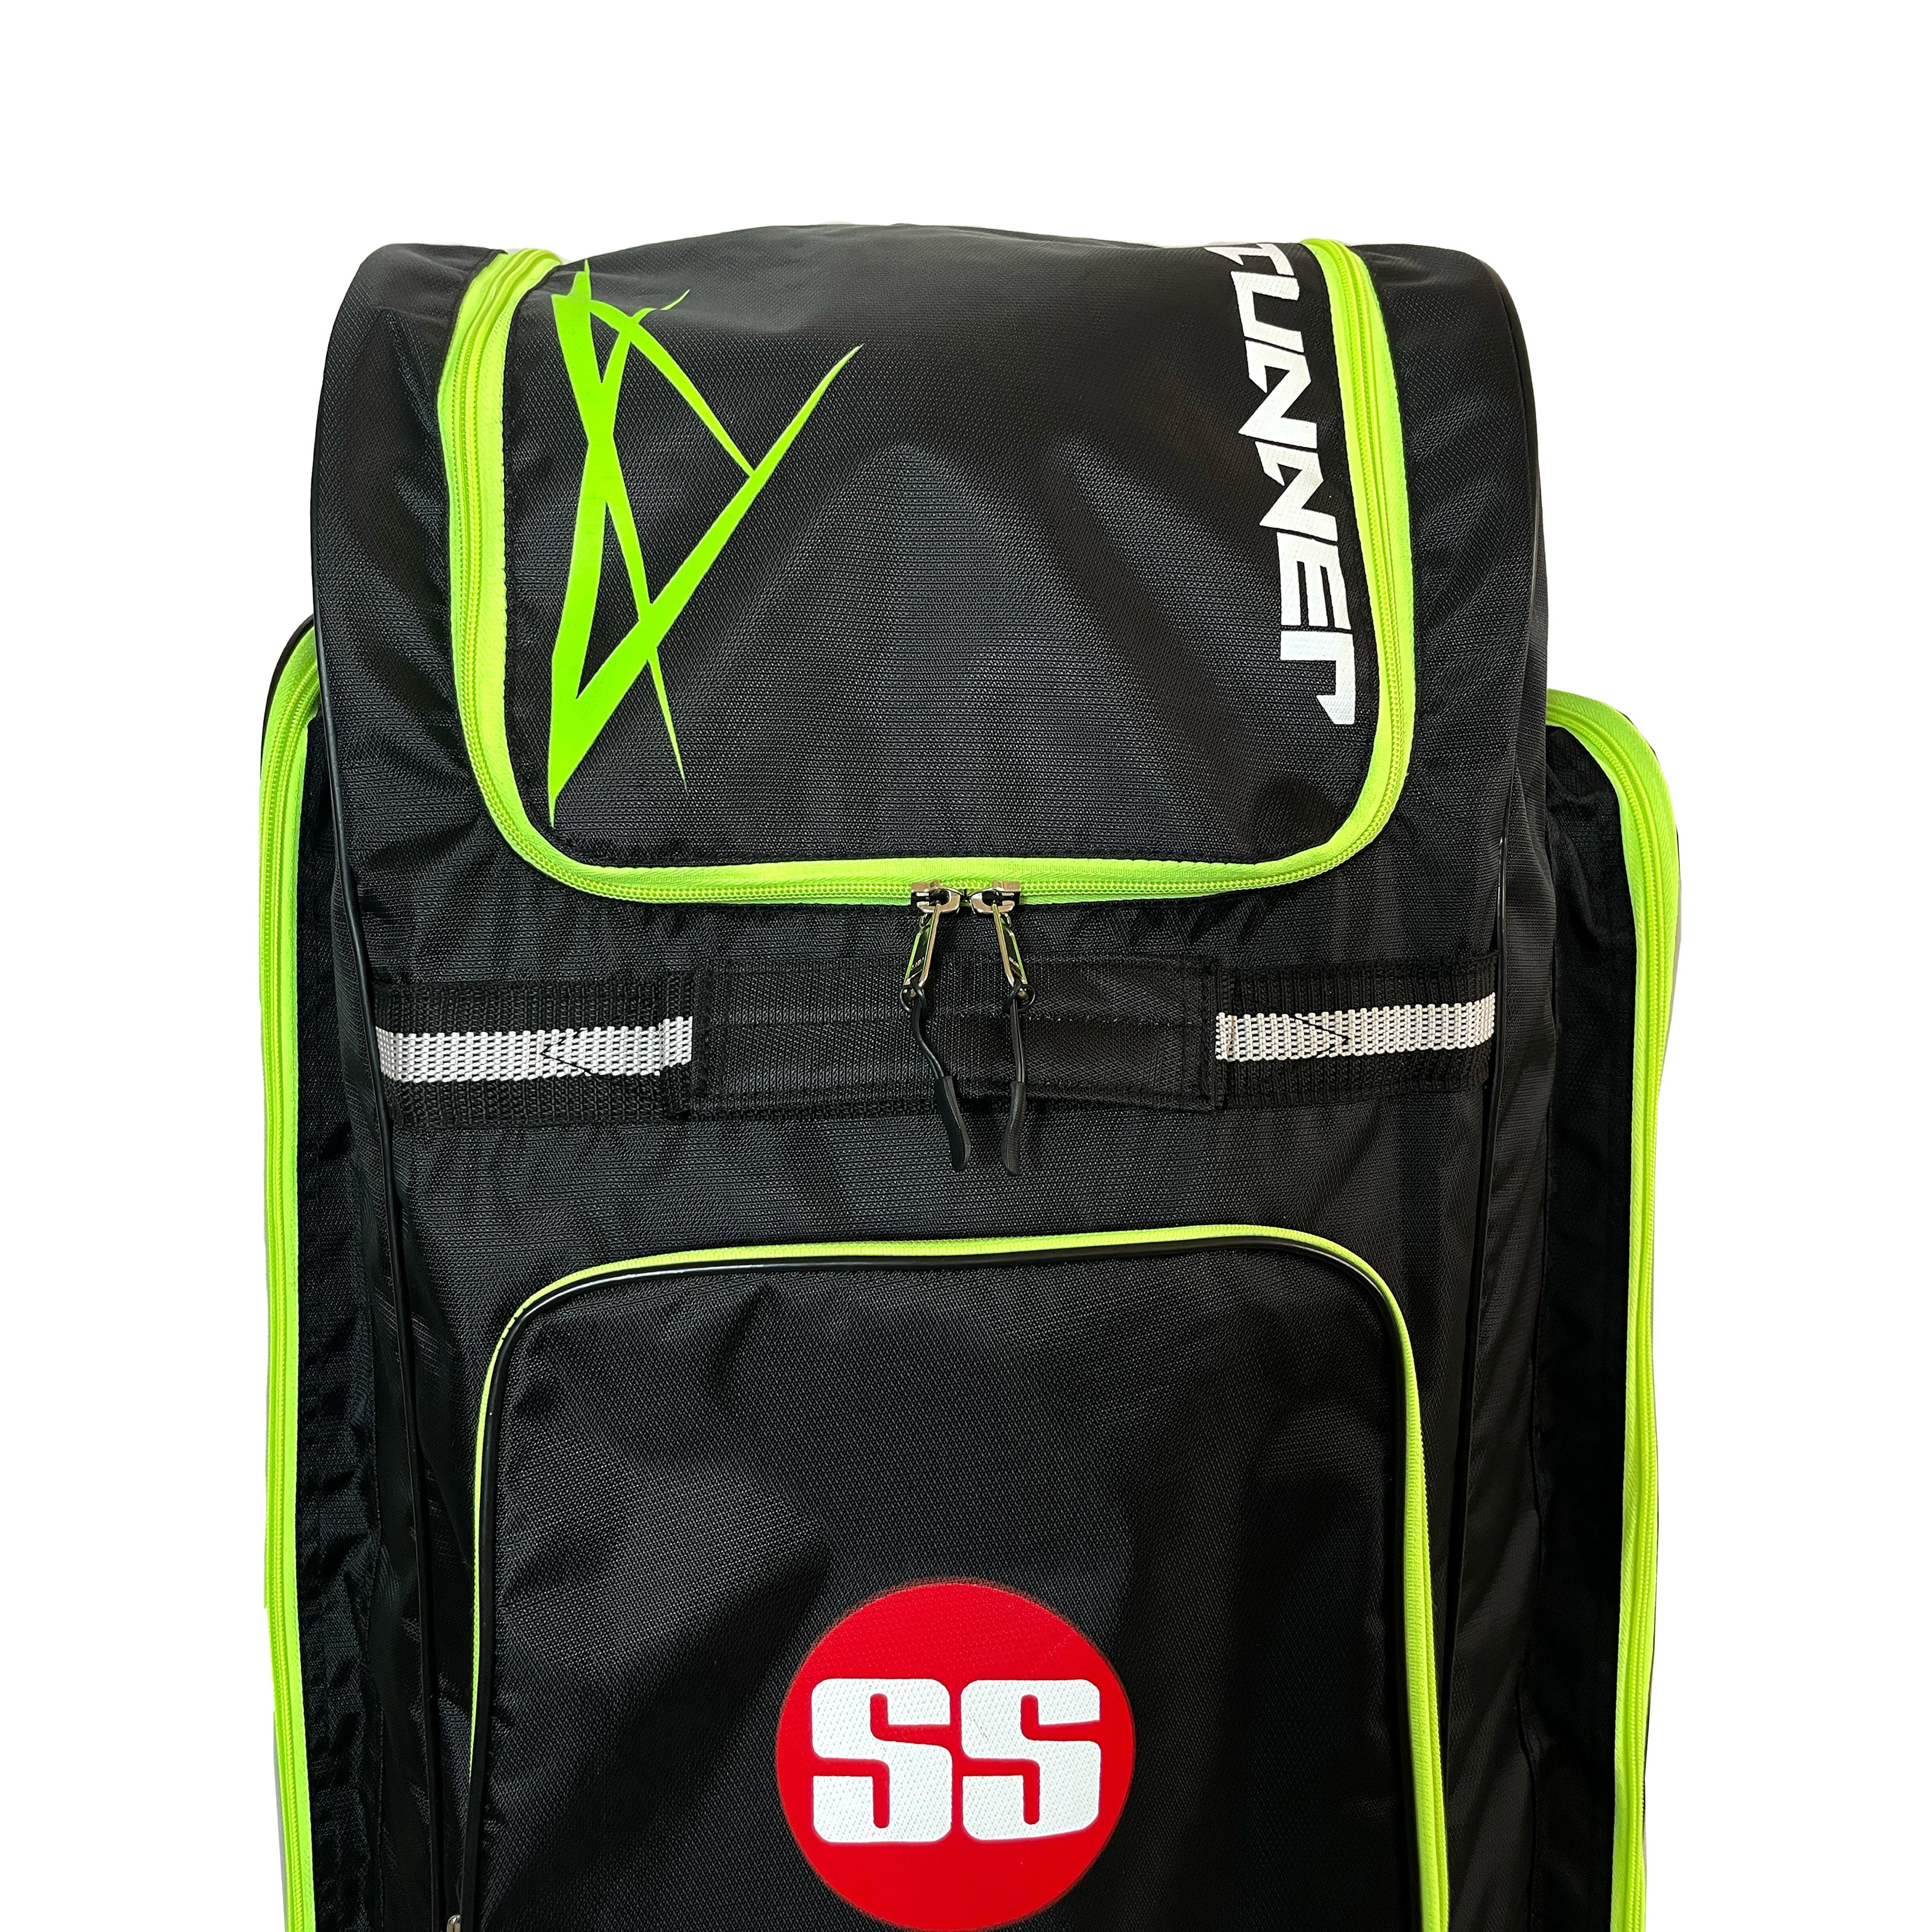 KIT BAG PRO | cricket kit bags | kit bag uk – CA Sports Global